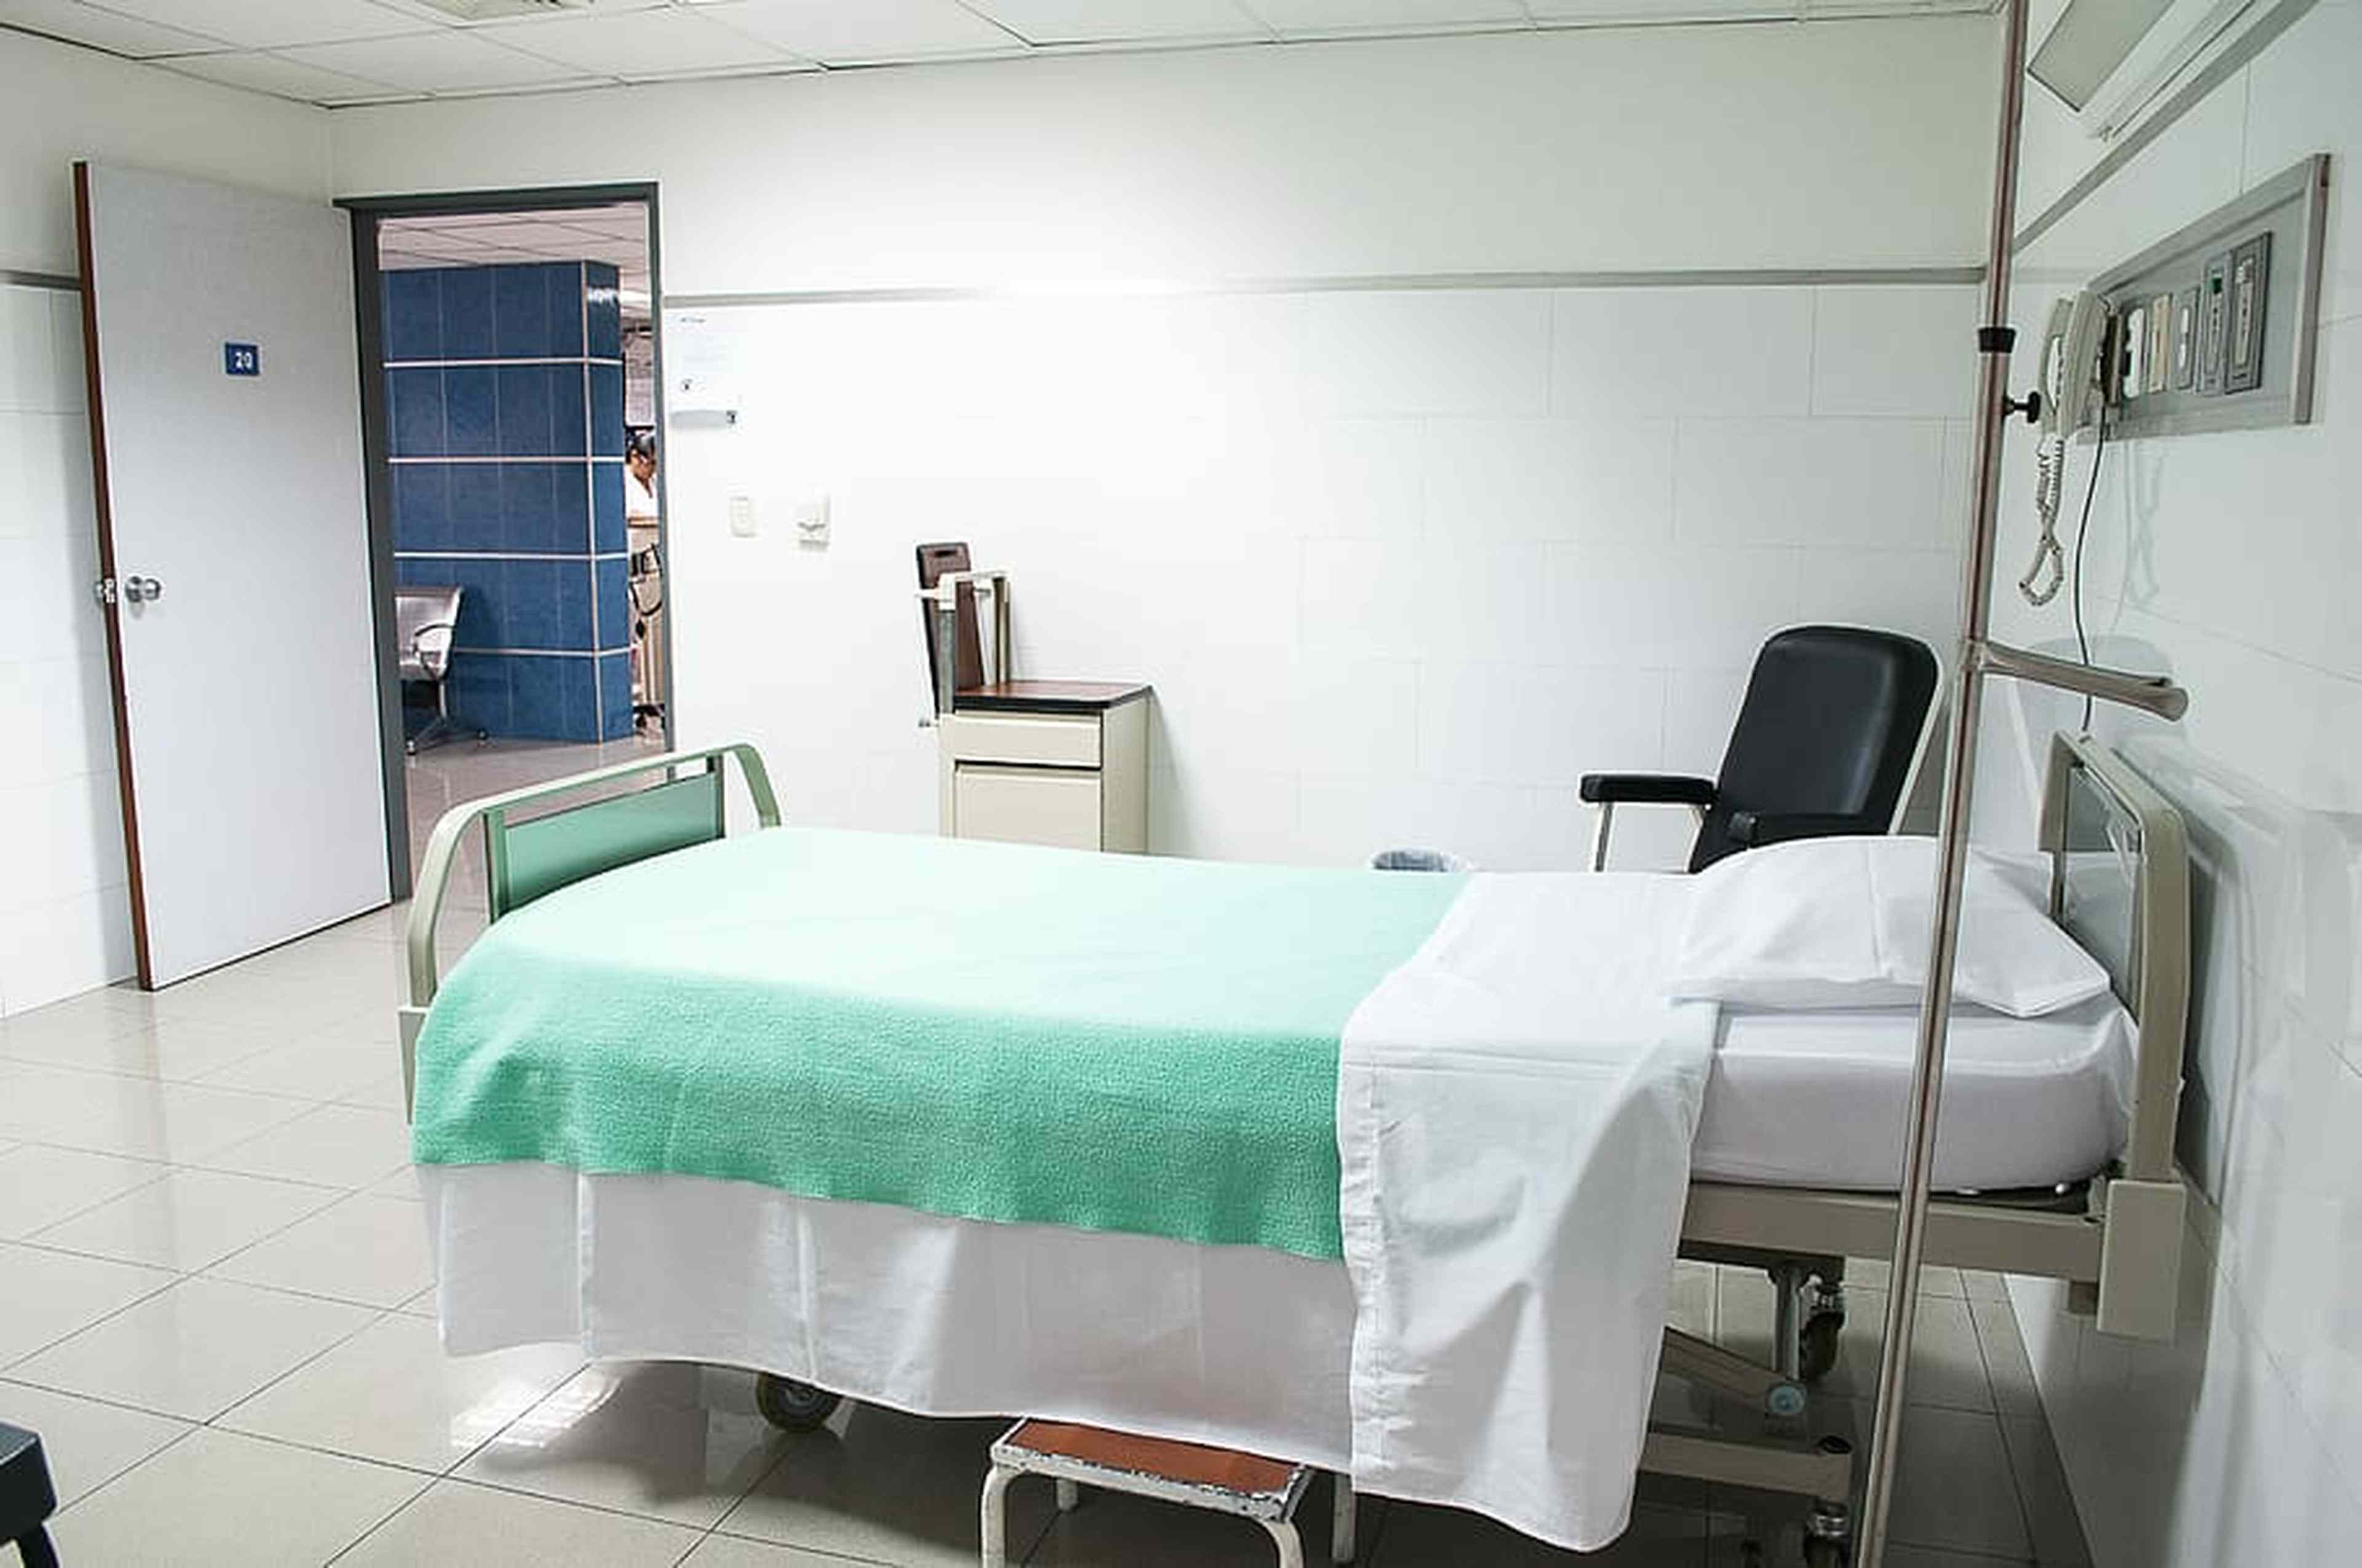 /2022/05/hospital-hospital-bed-bed-medical